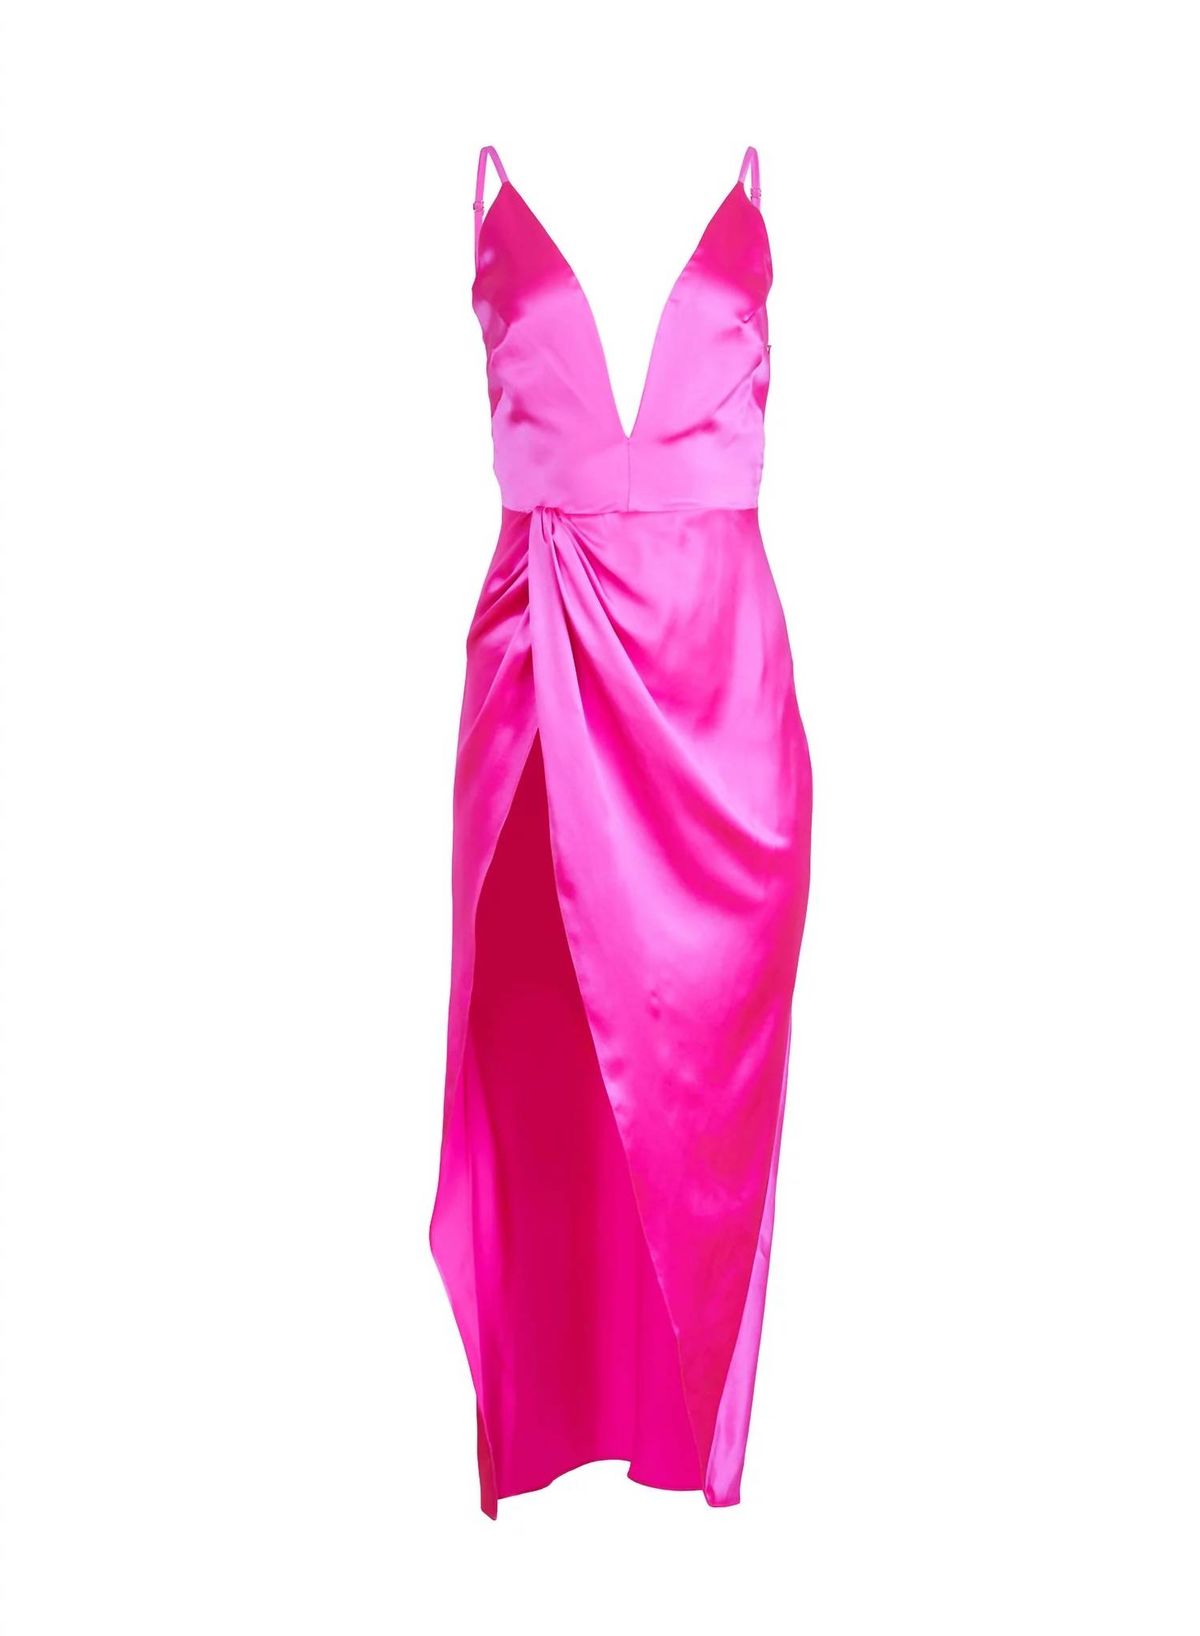 Style 1-3393943617-1498 Fleur Du Mal Size 4 Plunge Satin Pink Side Slit Dress on Queenly